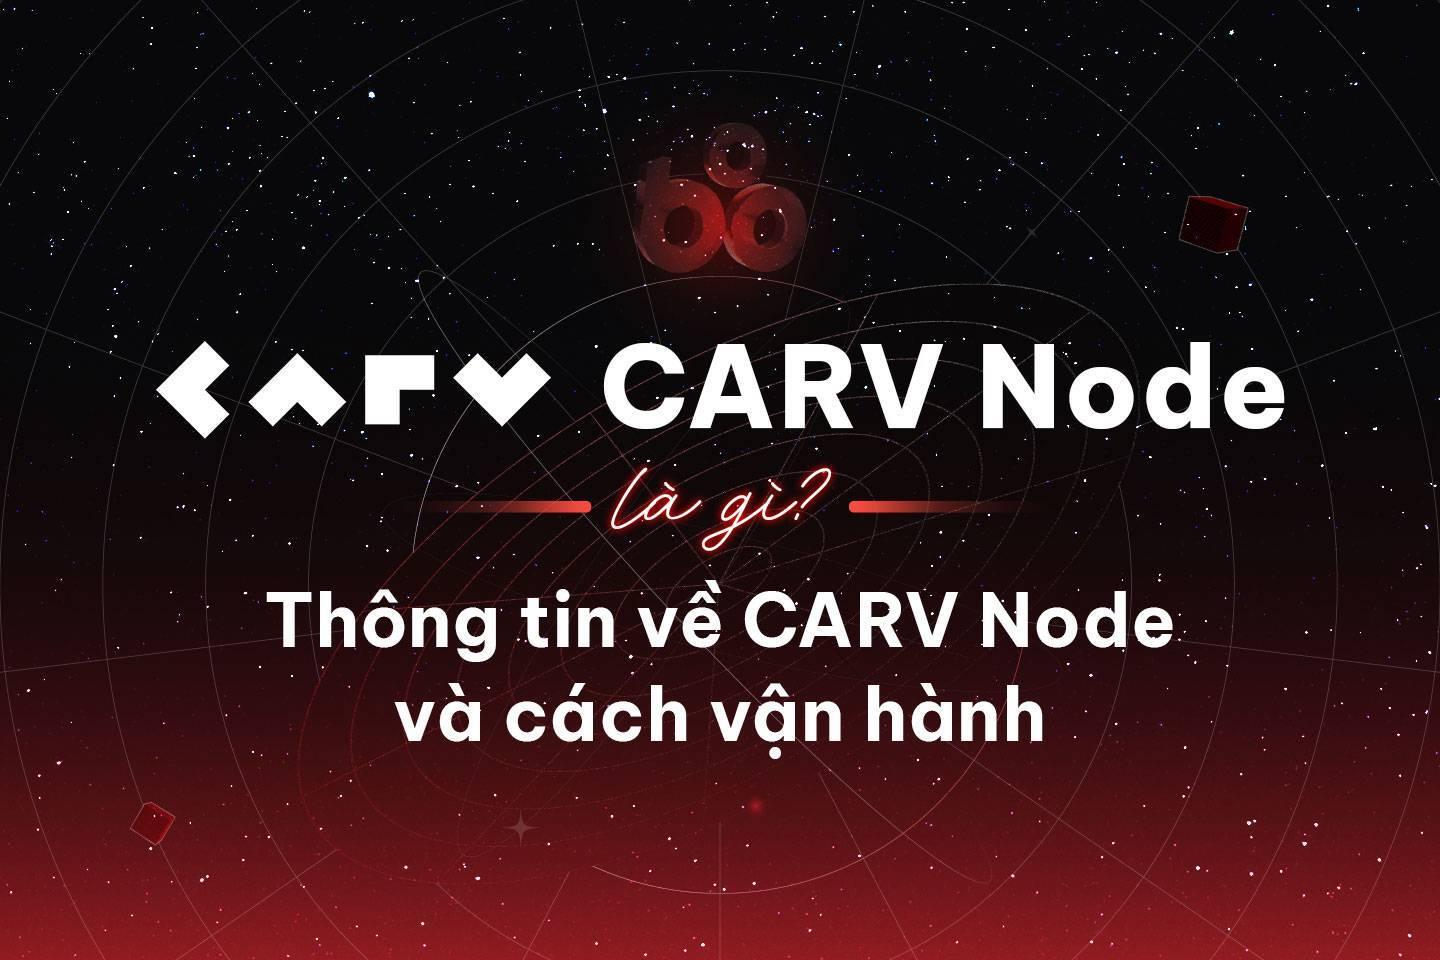 carv-node-la-gi-tim-hieu-va-huong-dan-van-hanh-carv-node